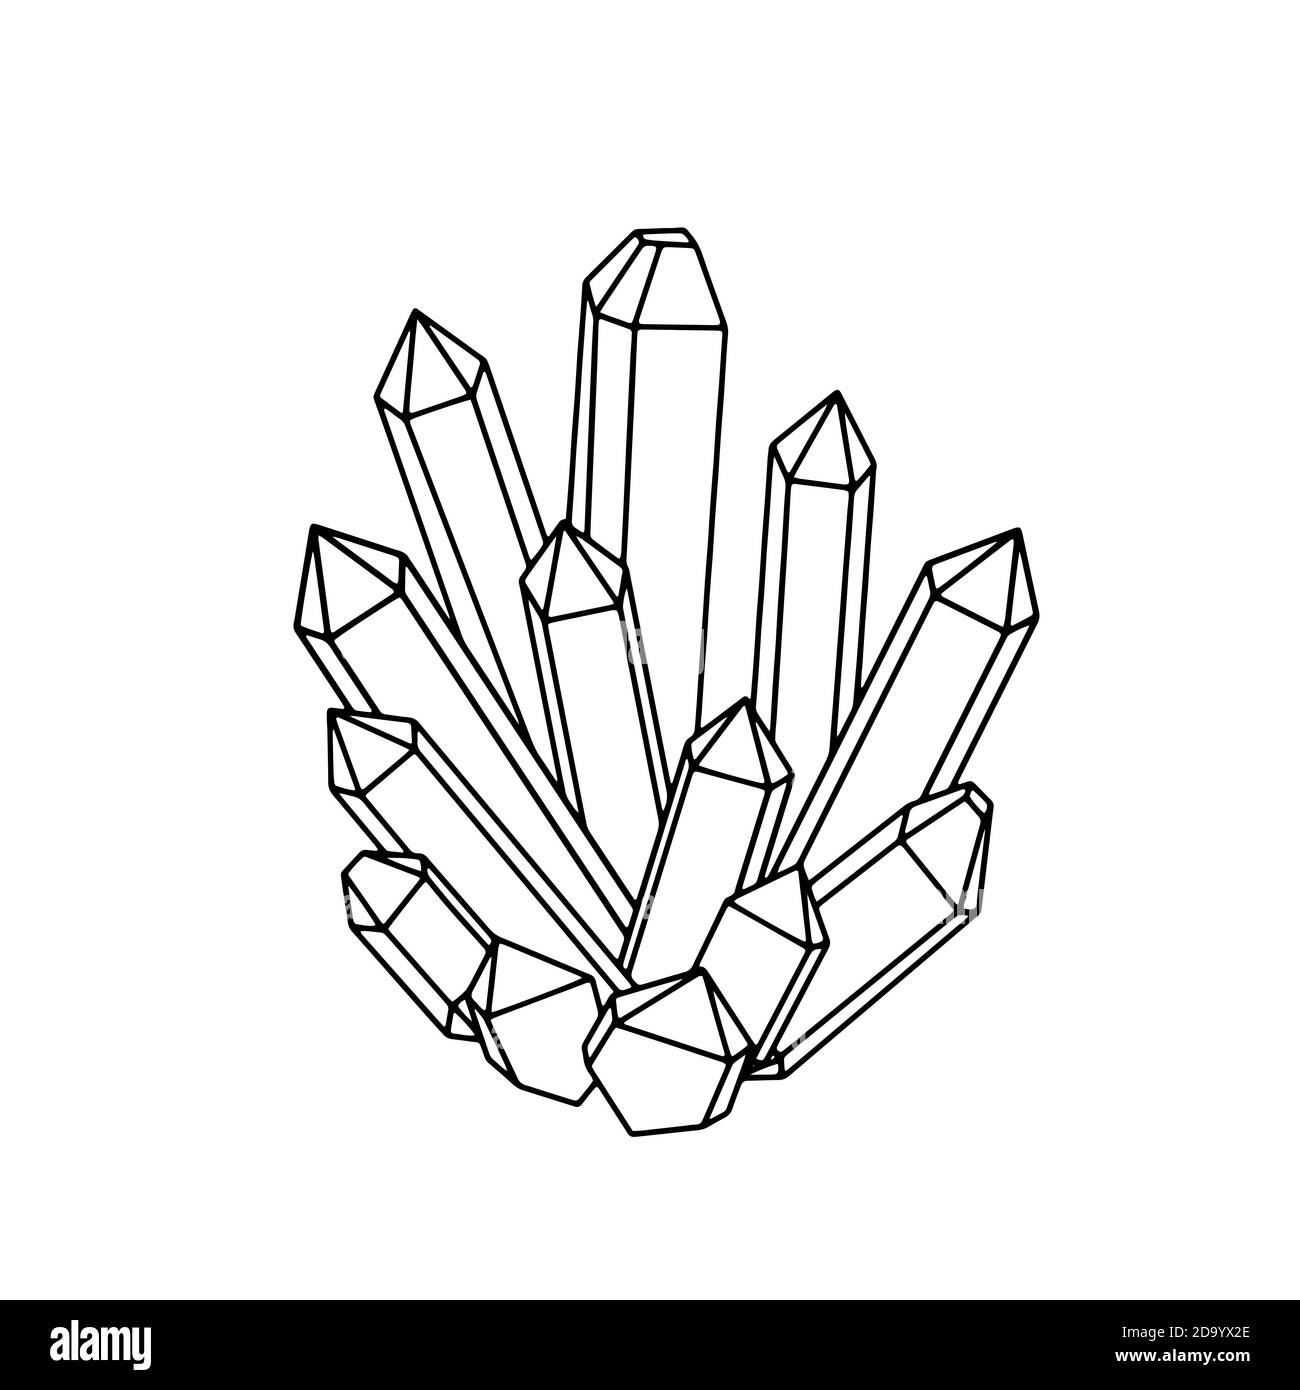 Illustration de cristaux de mystère dessinés à la main. Simple isolé noir et blanc dessin de gemmes précieuses et sparkles.Print. Illustration vectorielle Illustration de Vecteur